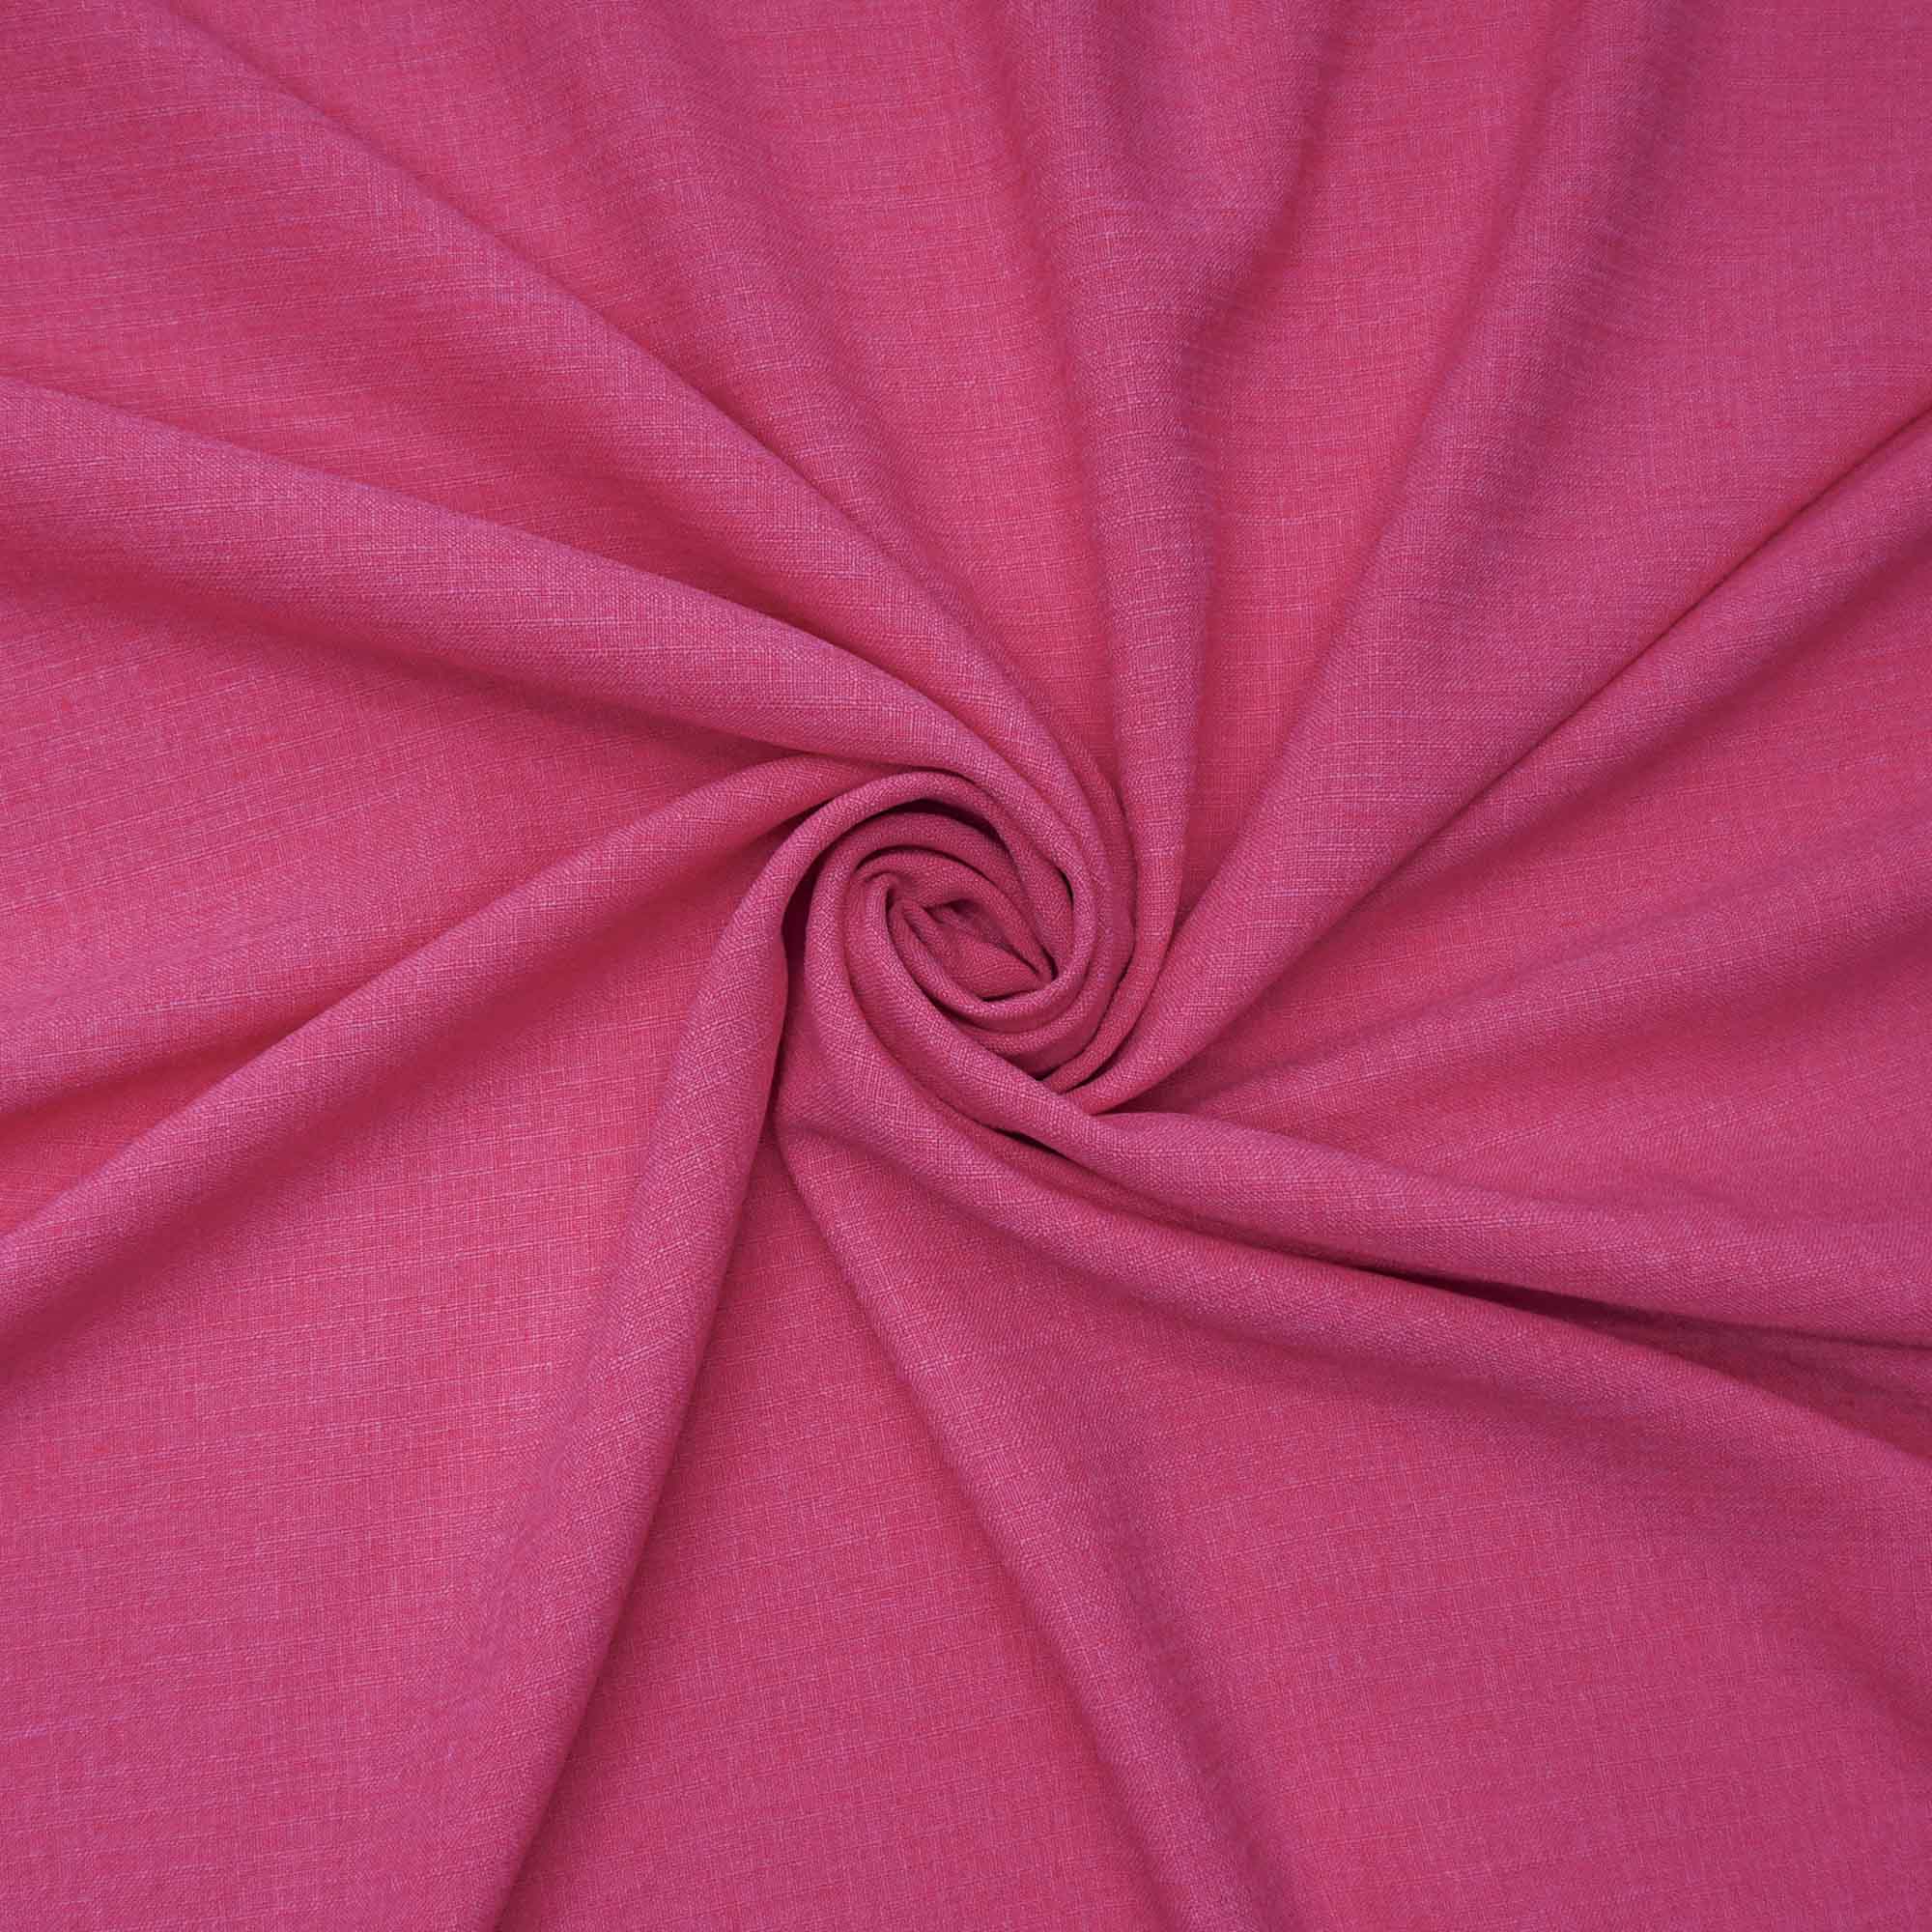 Tecido poliester com textura de linho rosa chiclete